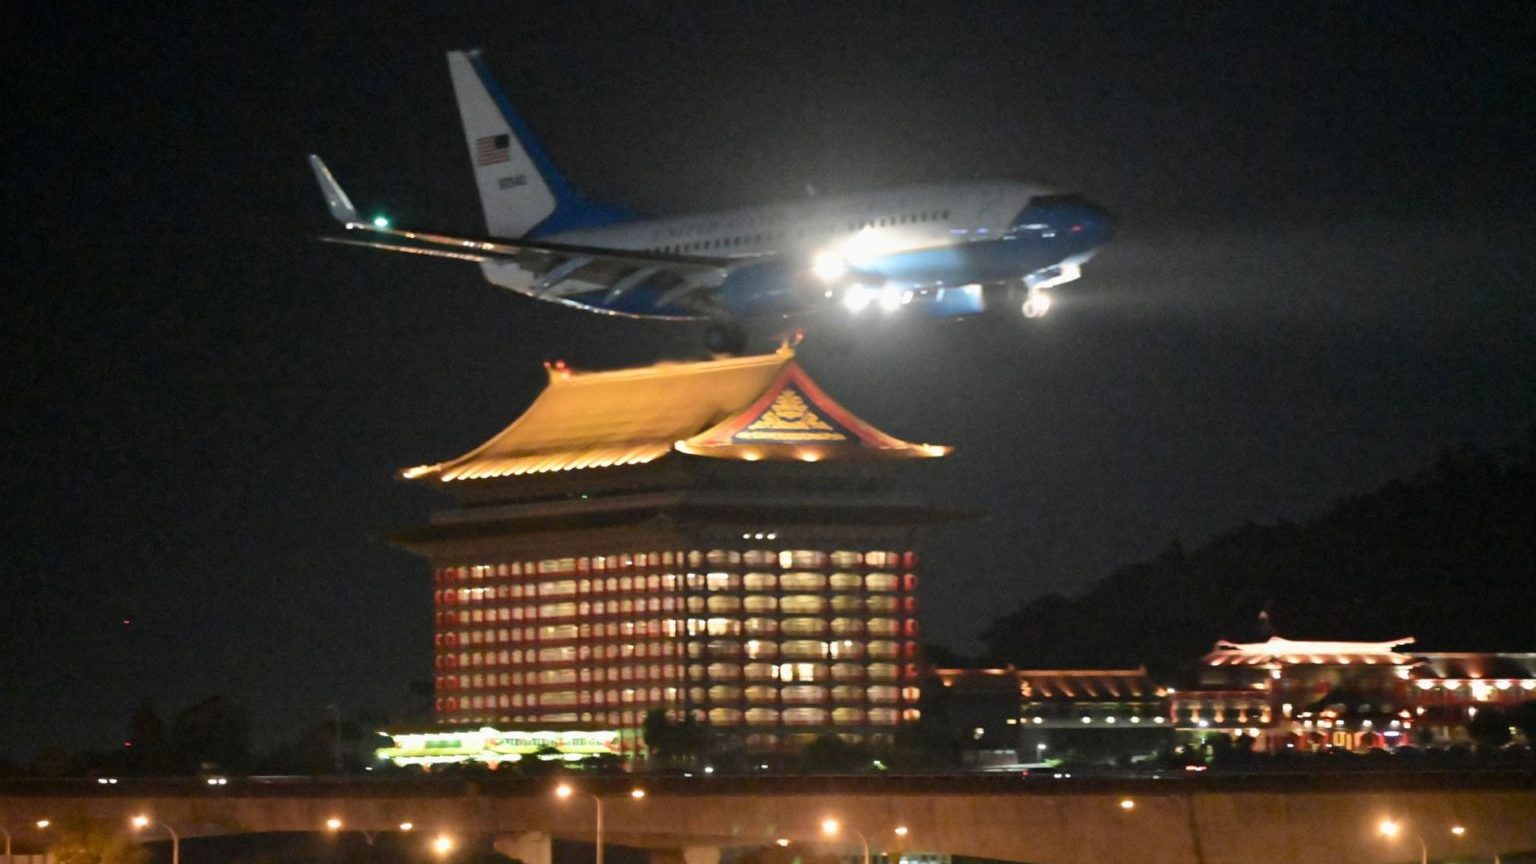 Máy bay của Không Quân Mỹ chở bà Nancy Pelosi, chủ tịch Hạ Viện Mỹ, đáp xuống phi trường Tùng Sơn, Đài Bắc, chính thức thăm Đài Loan, ngày 2/8/2022, làm Bắc Kinh nổi giận. Ảnh: Sam Yeh/AFP via Getty Images